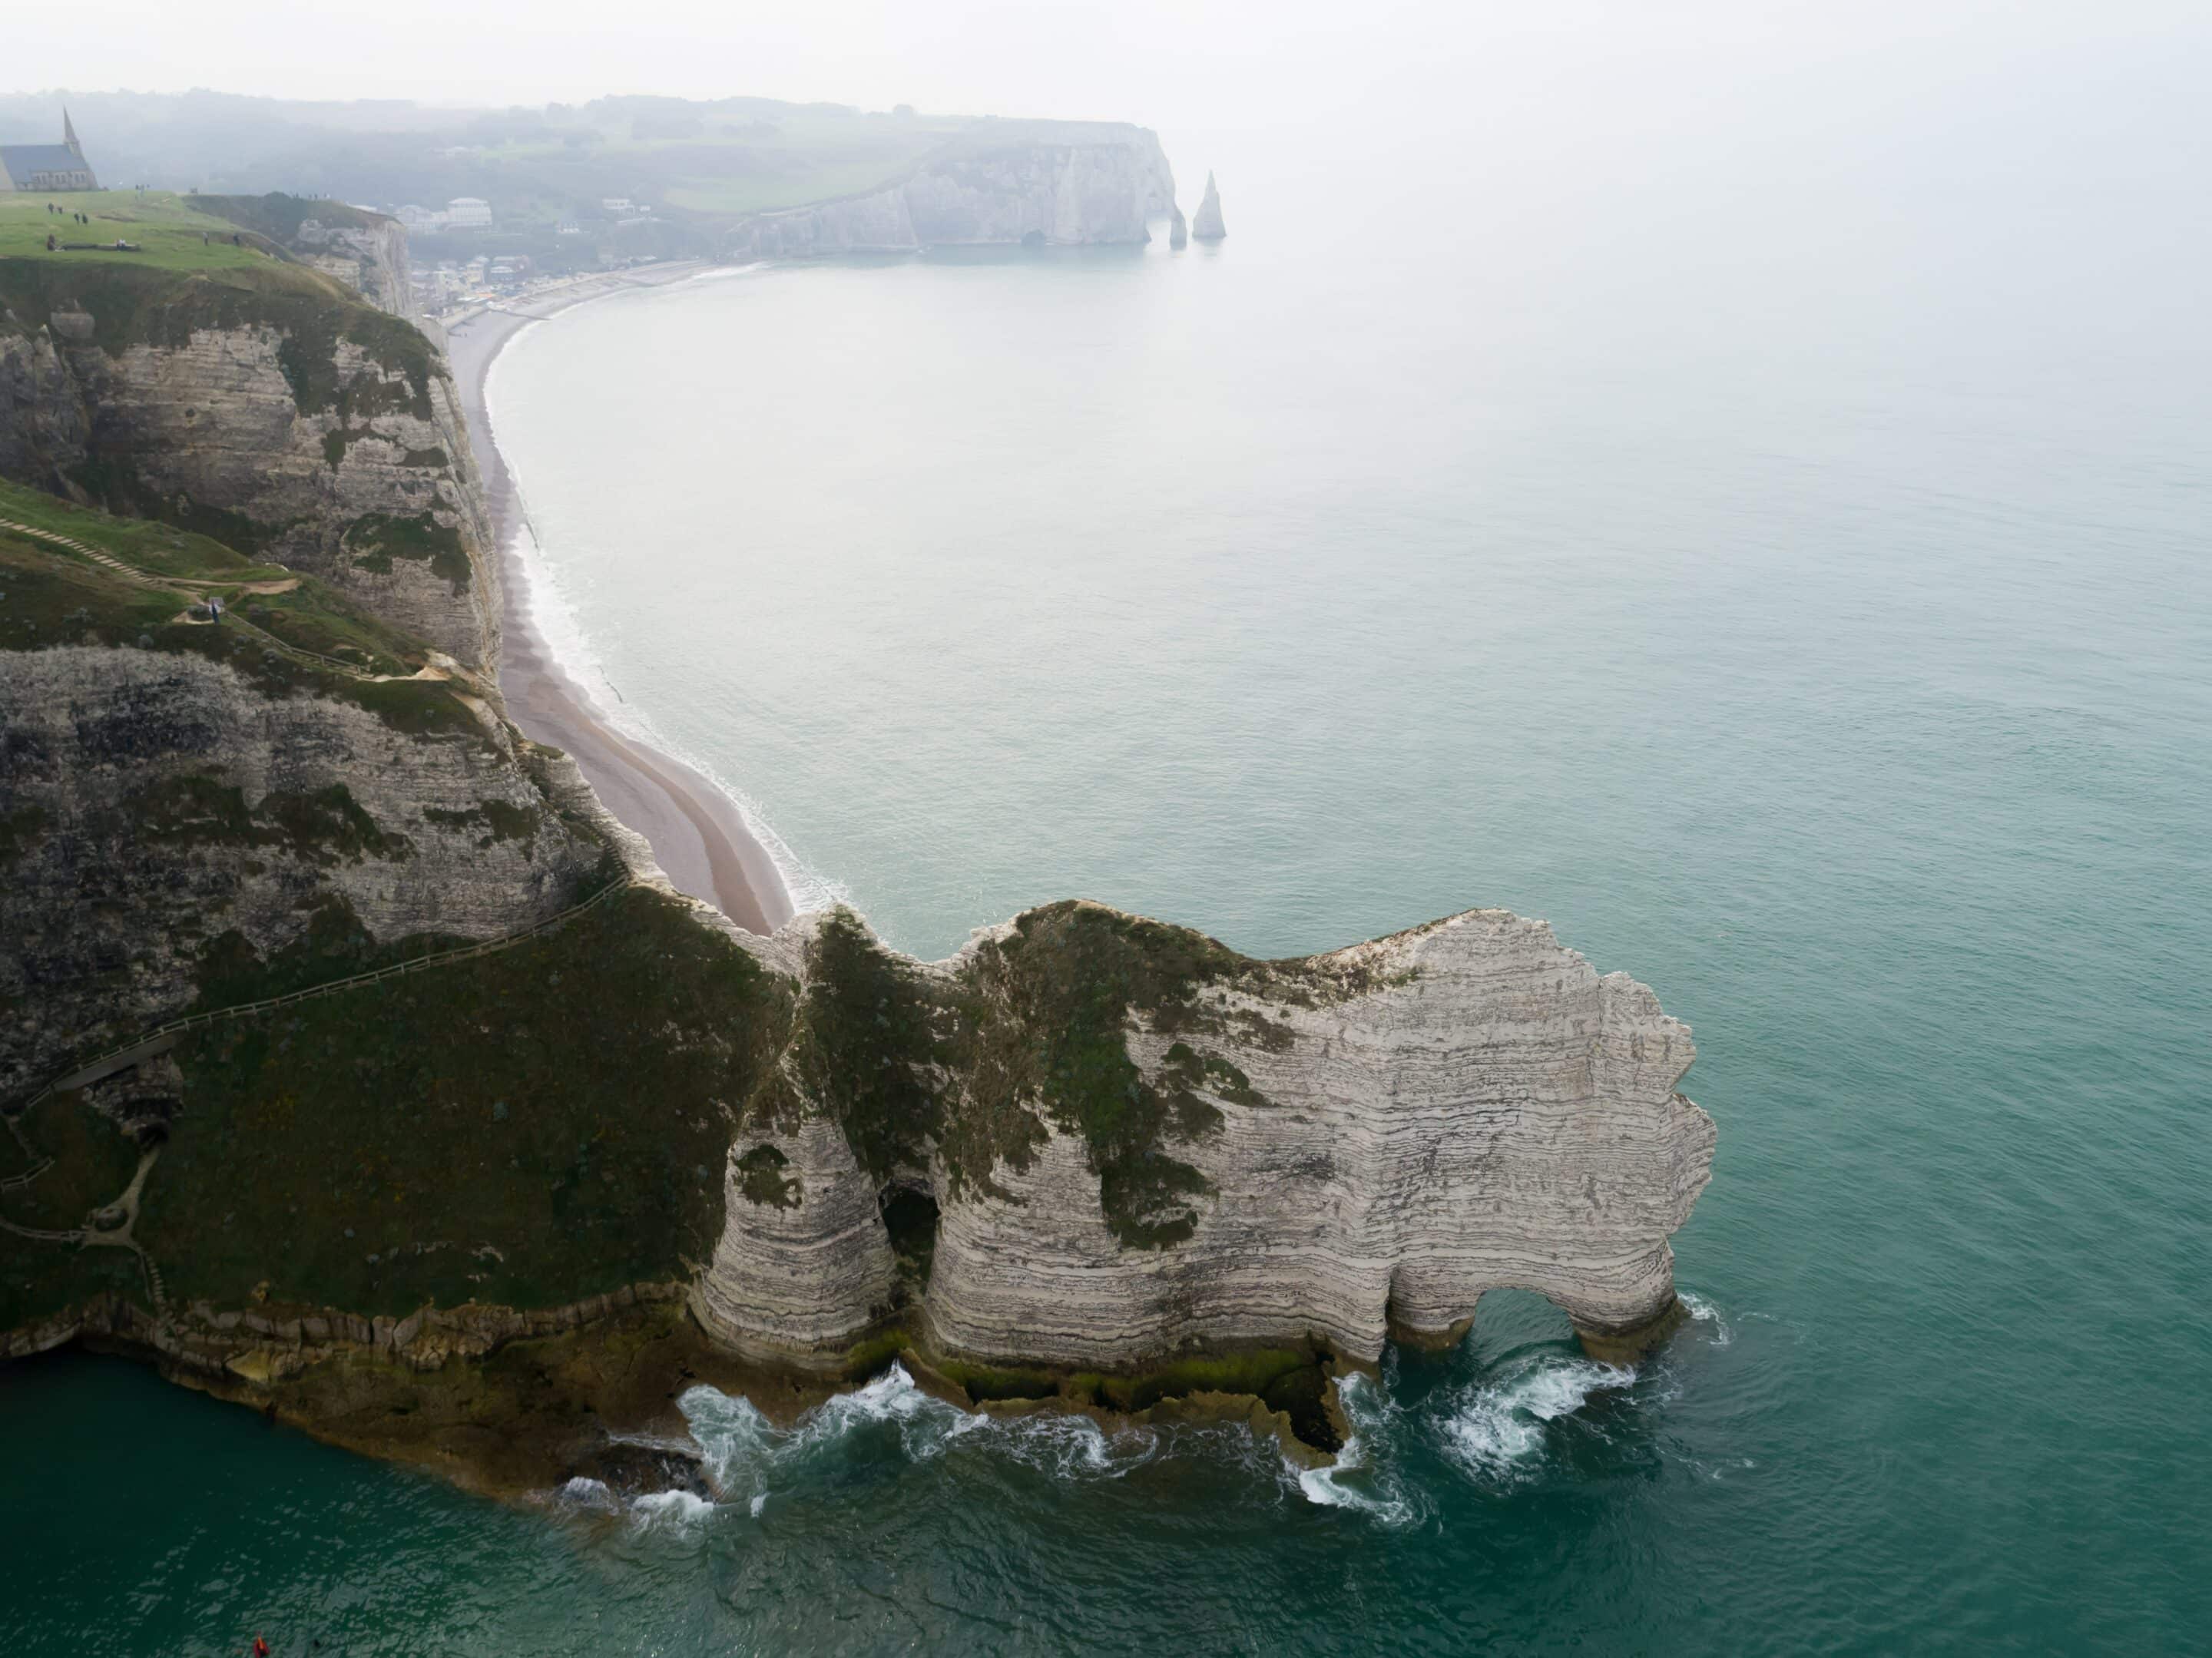 Vue sur les falaises emblématiques d'Étretat, illustrant la rencontre dramatique entre la terre et la mer sur la côte normande.